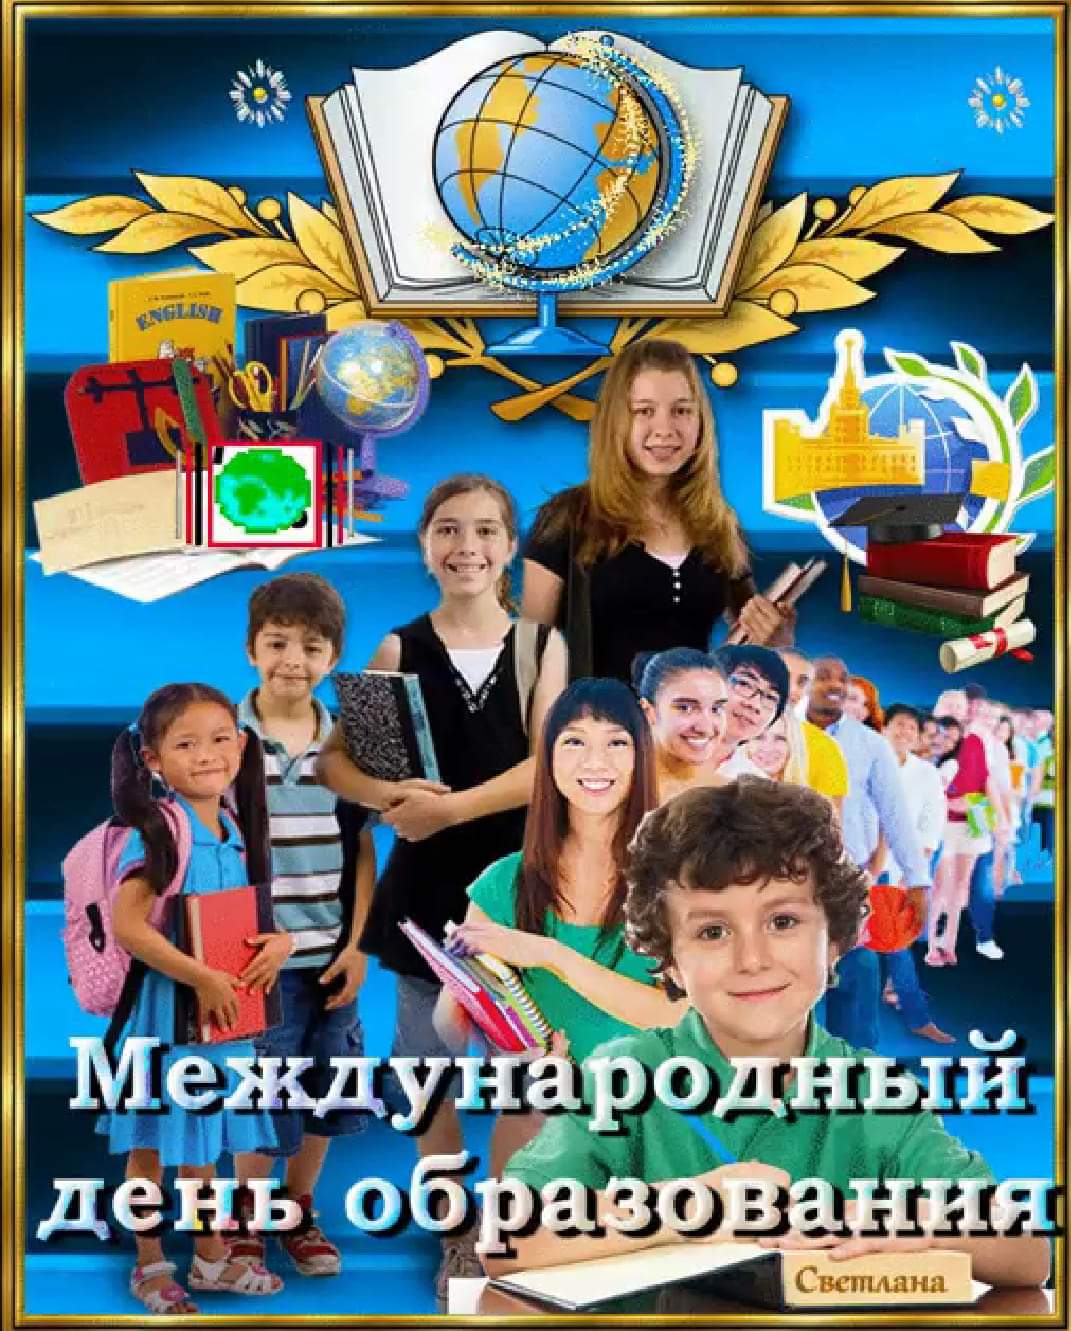 24 января - Международный день образования